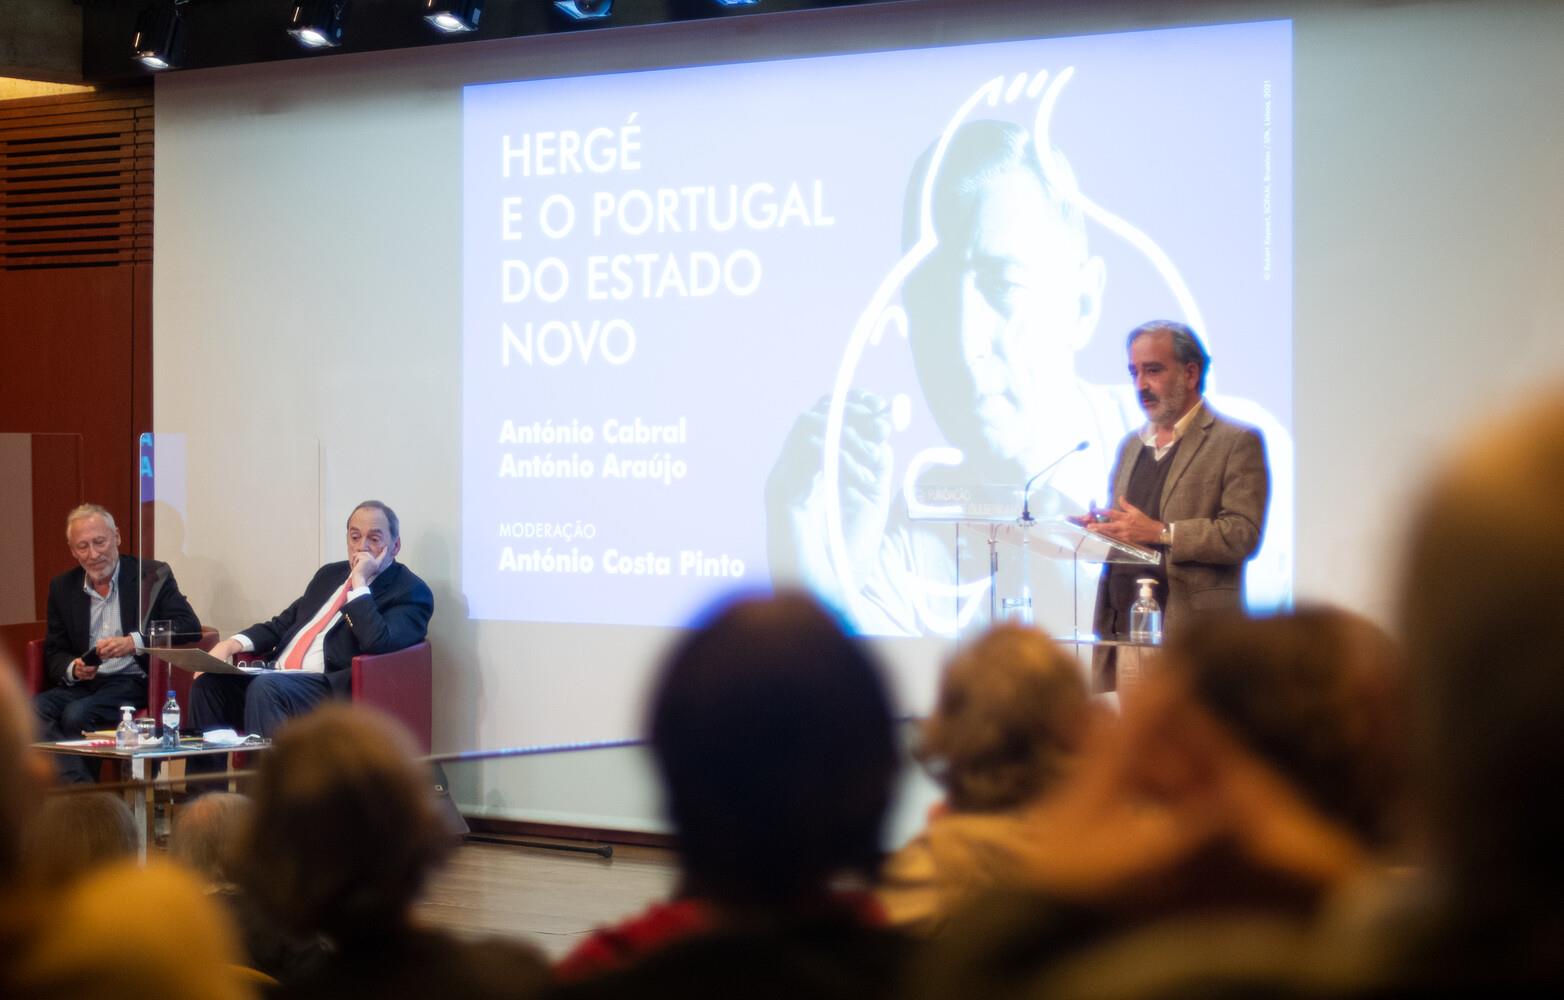 Ciclo Hergé e o Mundo Contemporâneo. António Costa Pinto; António Cabral (à esq.); António Araújo (à dir.)